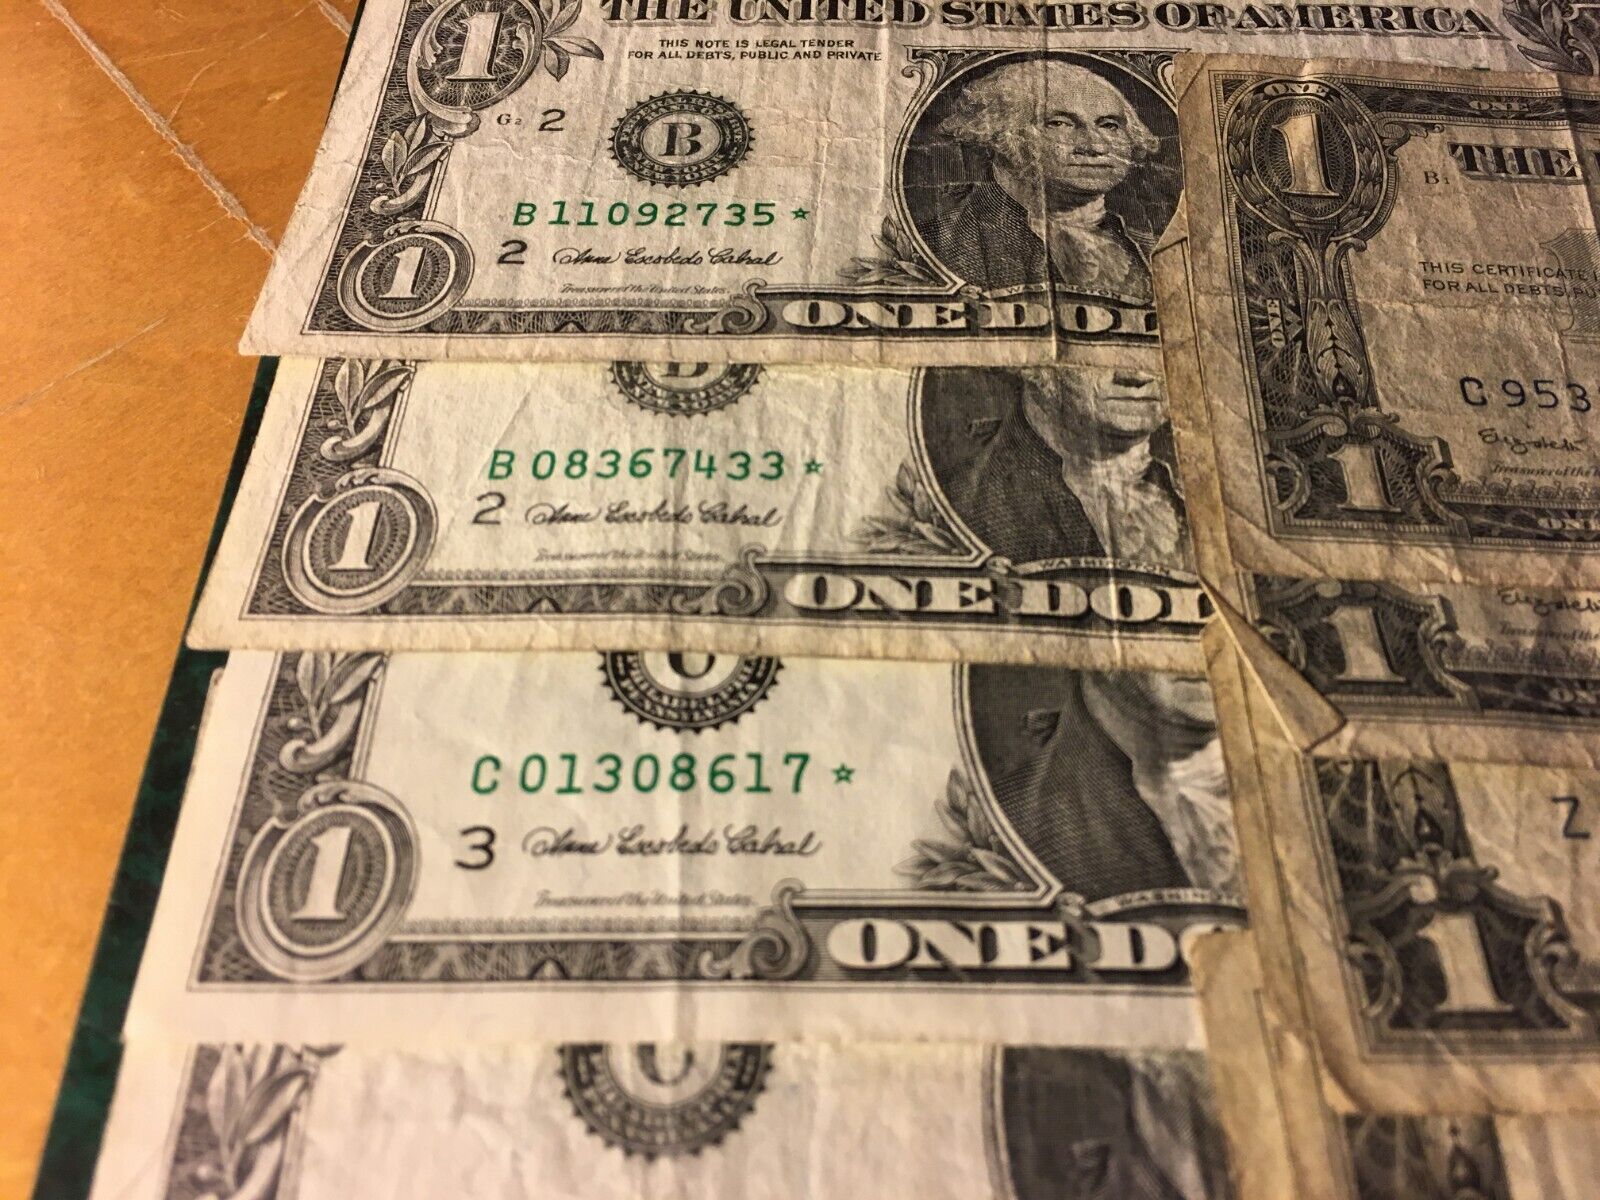 5 Each---$1.00 Star Bills & $1.00 Silver Certificates--10 Bills One Money